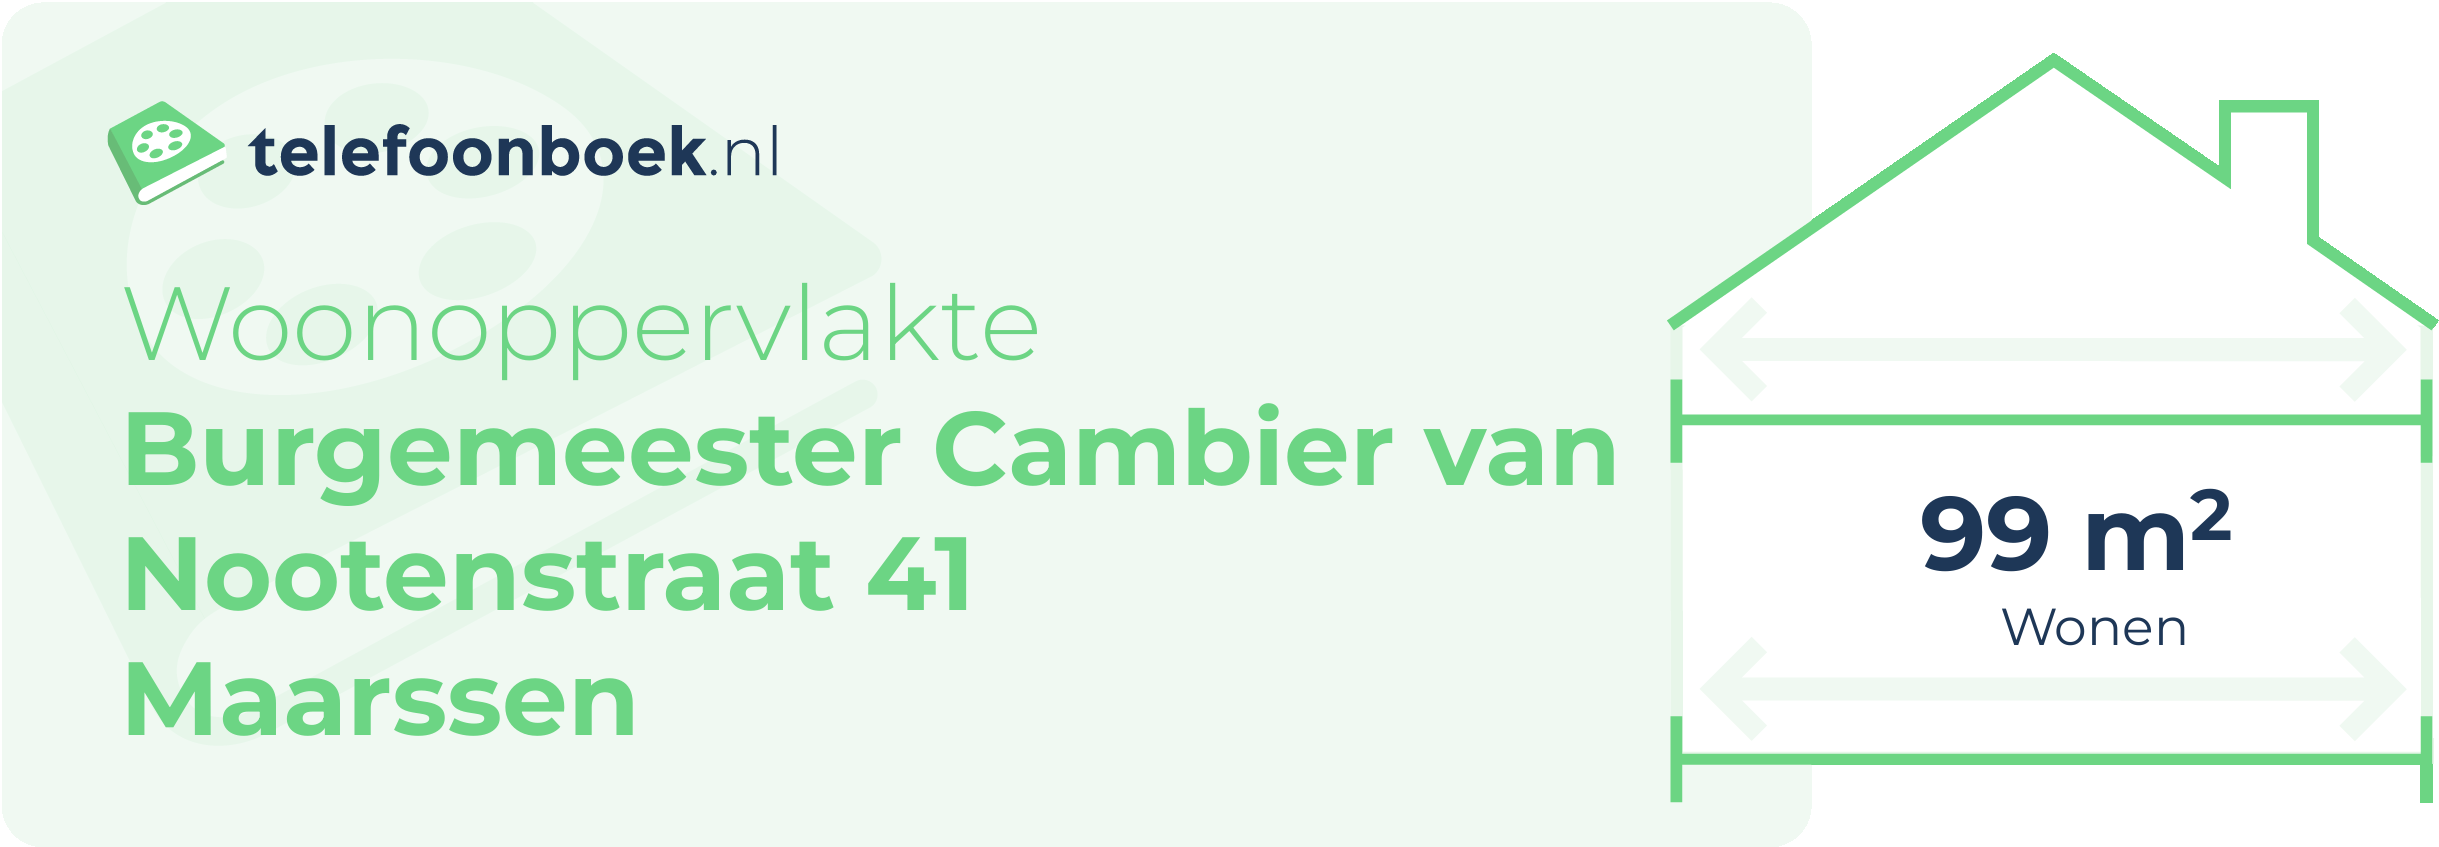 Woonoppervlakte Burgemeester Cambier Van Nootenstraat 41 Maarssen